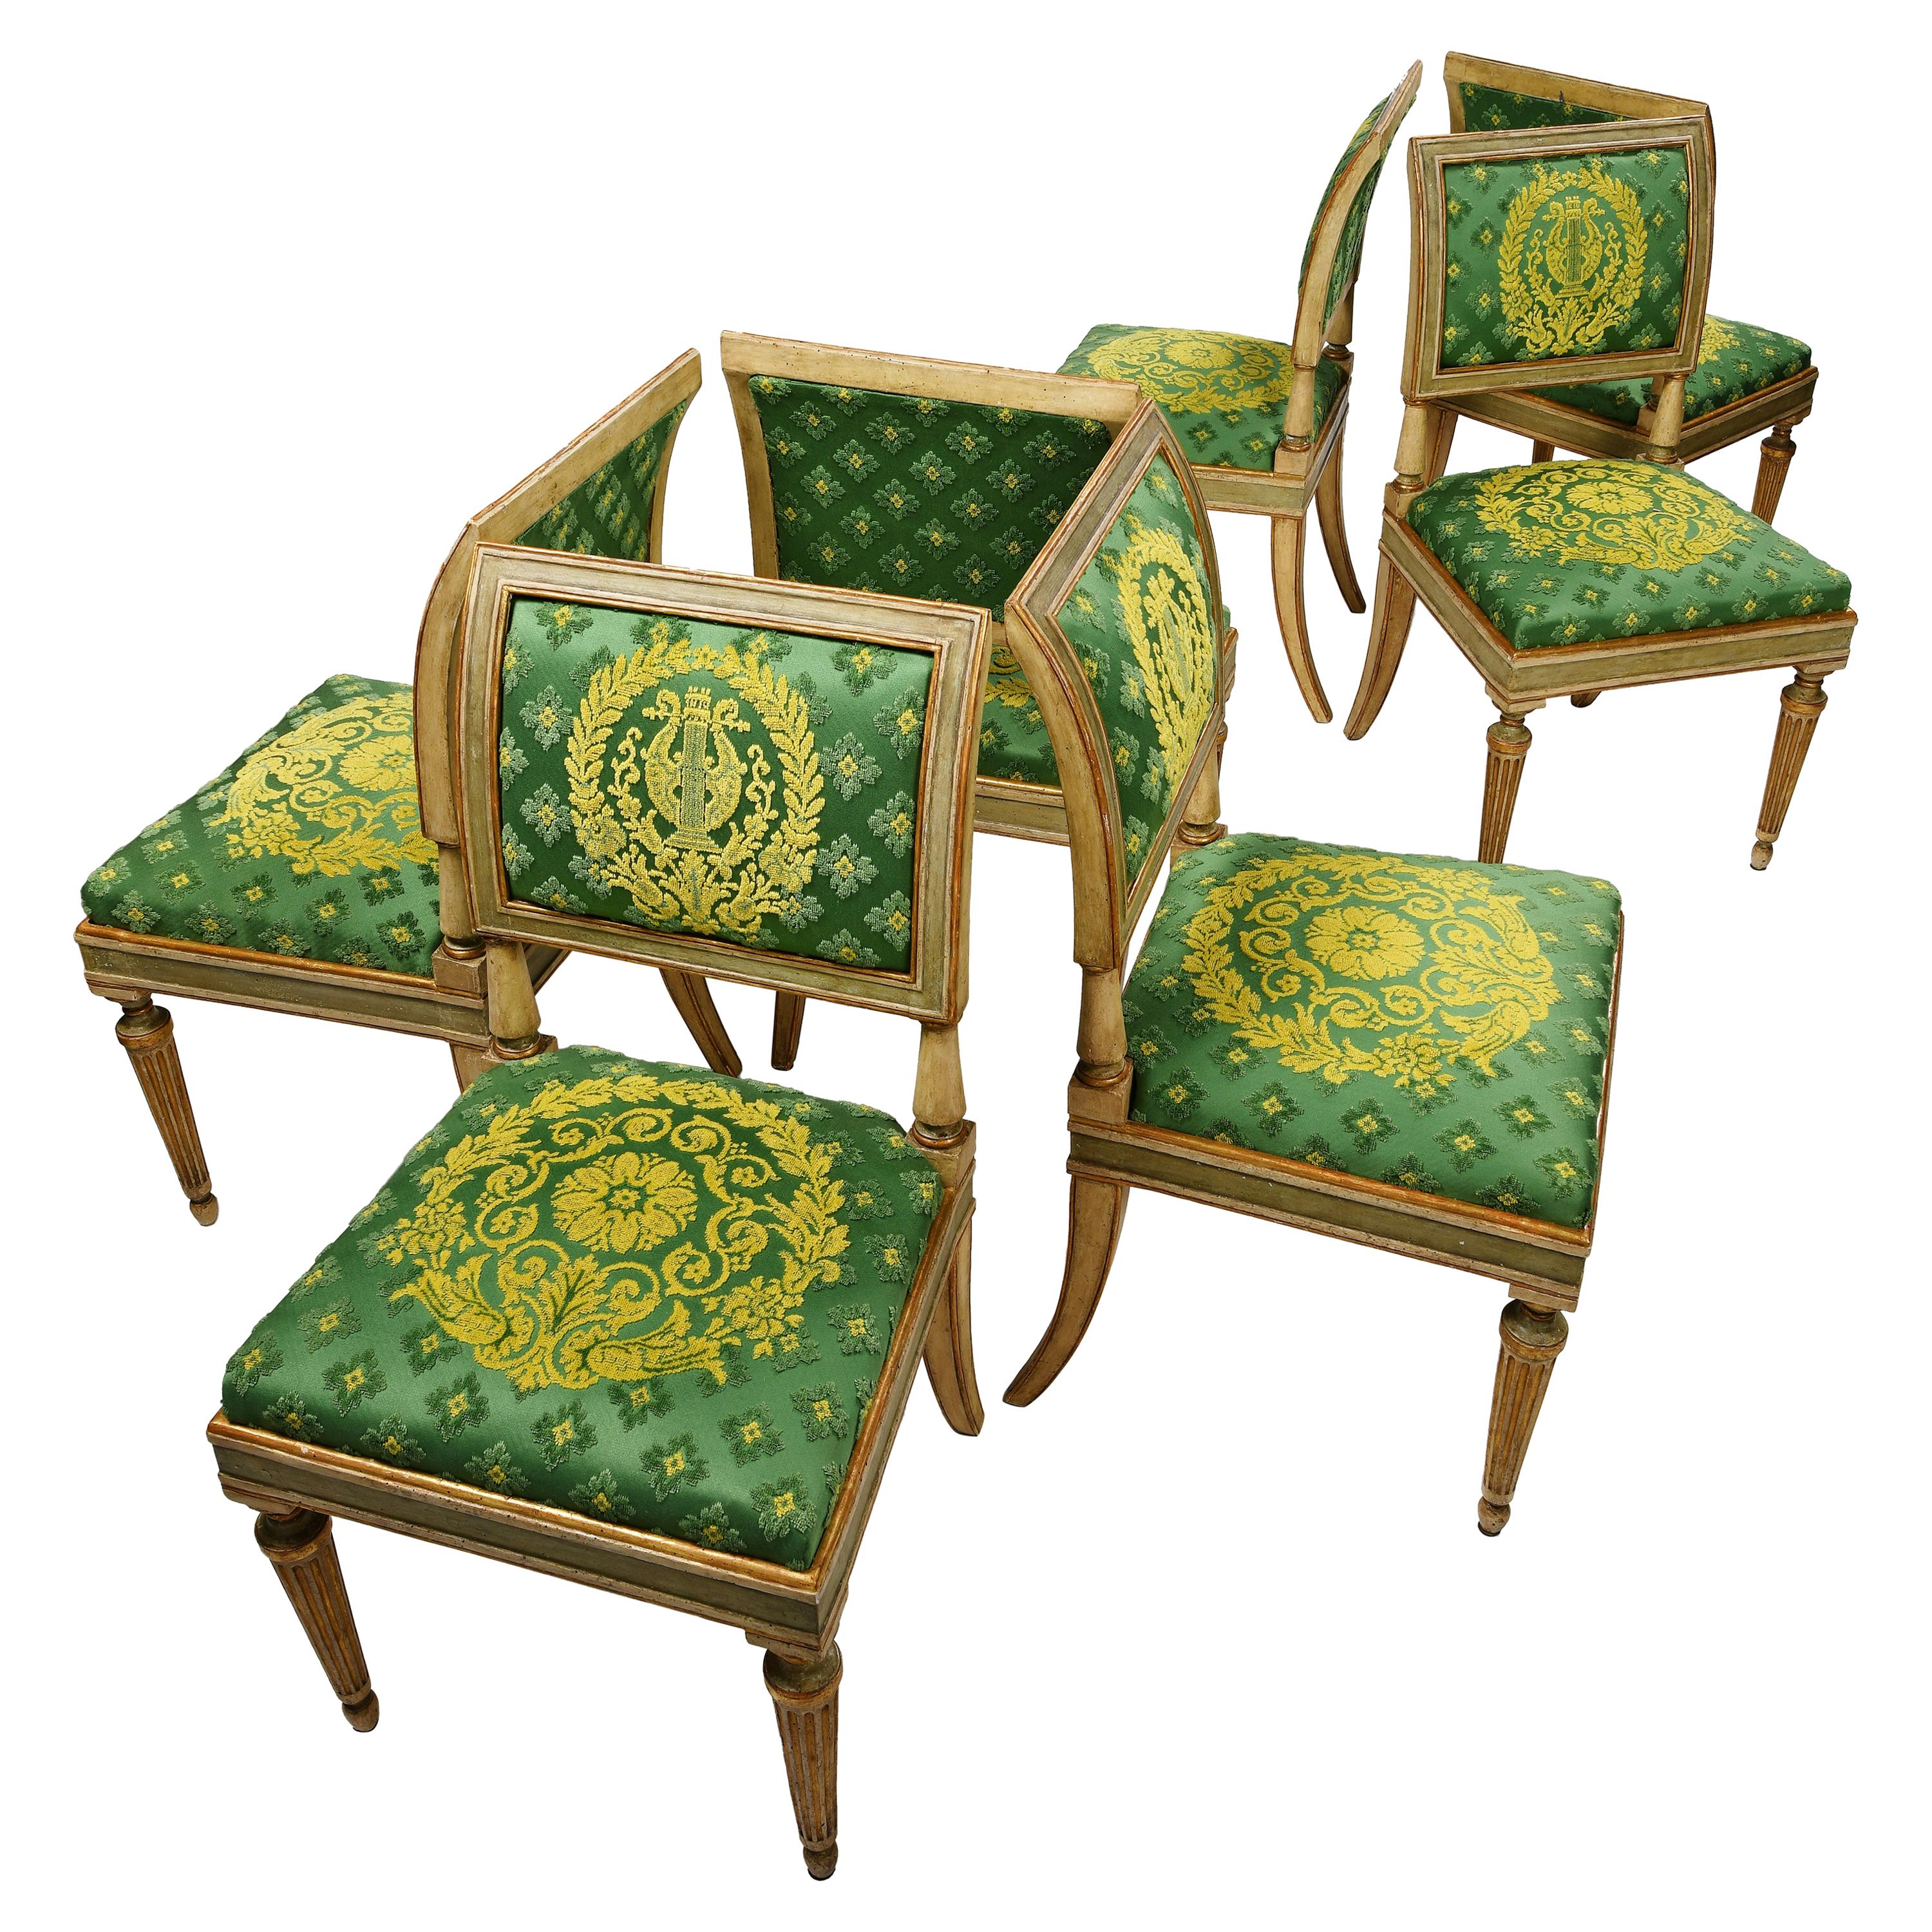 Sept chaises italiennes néoclassiques du début du XIXe siècle, Milan, datant d'environ 1820